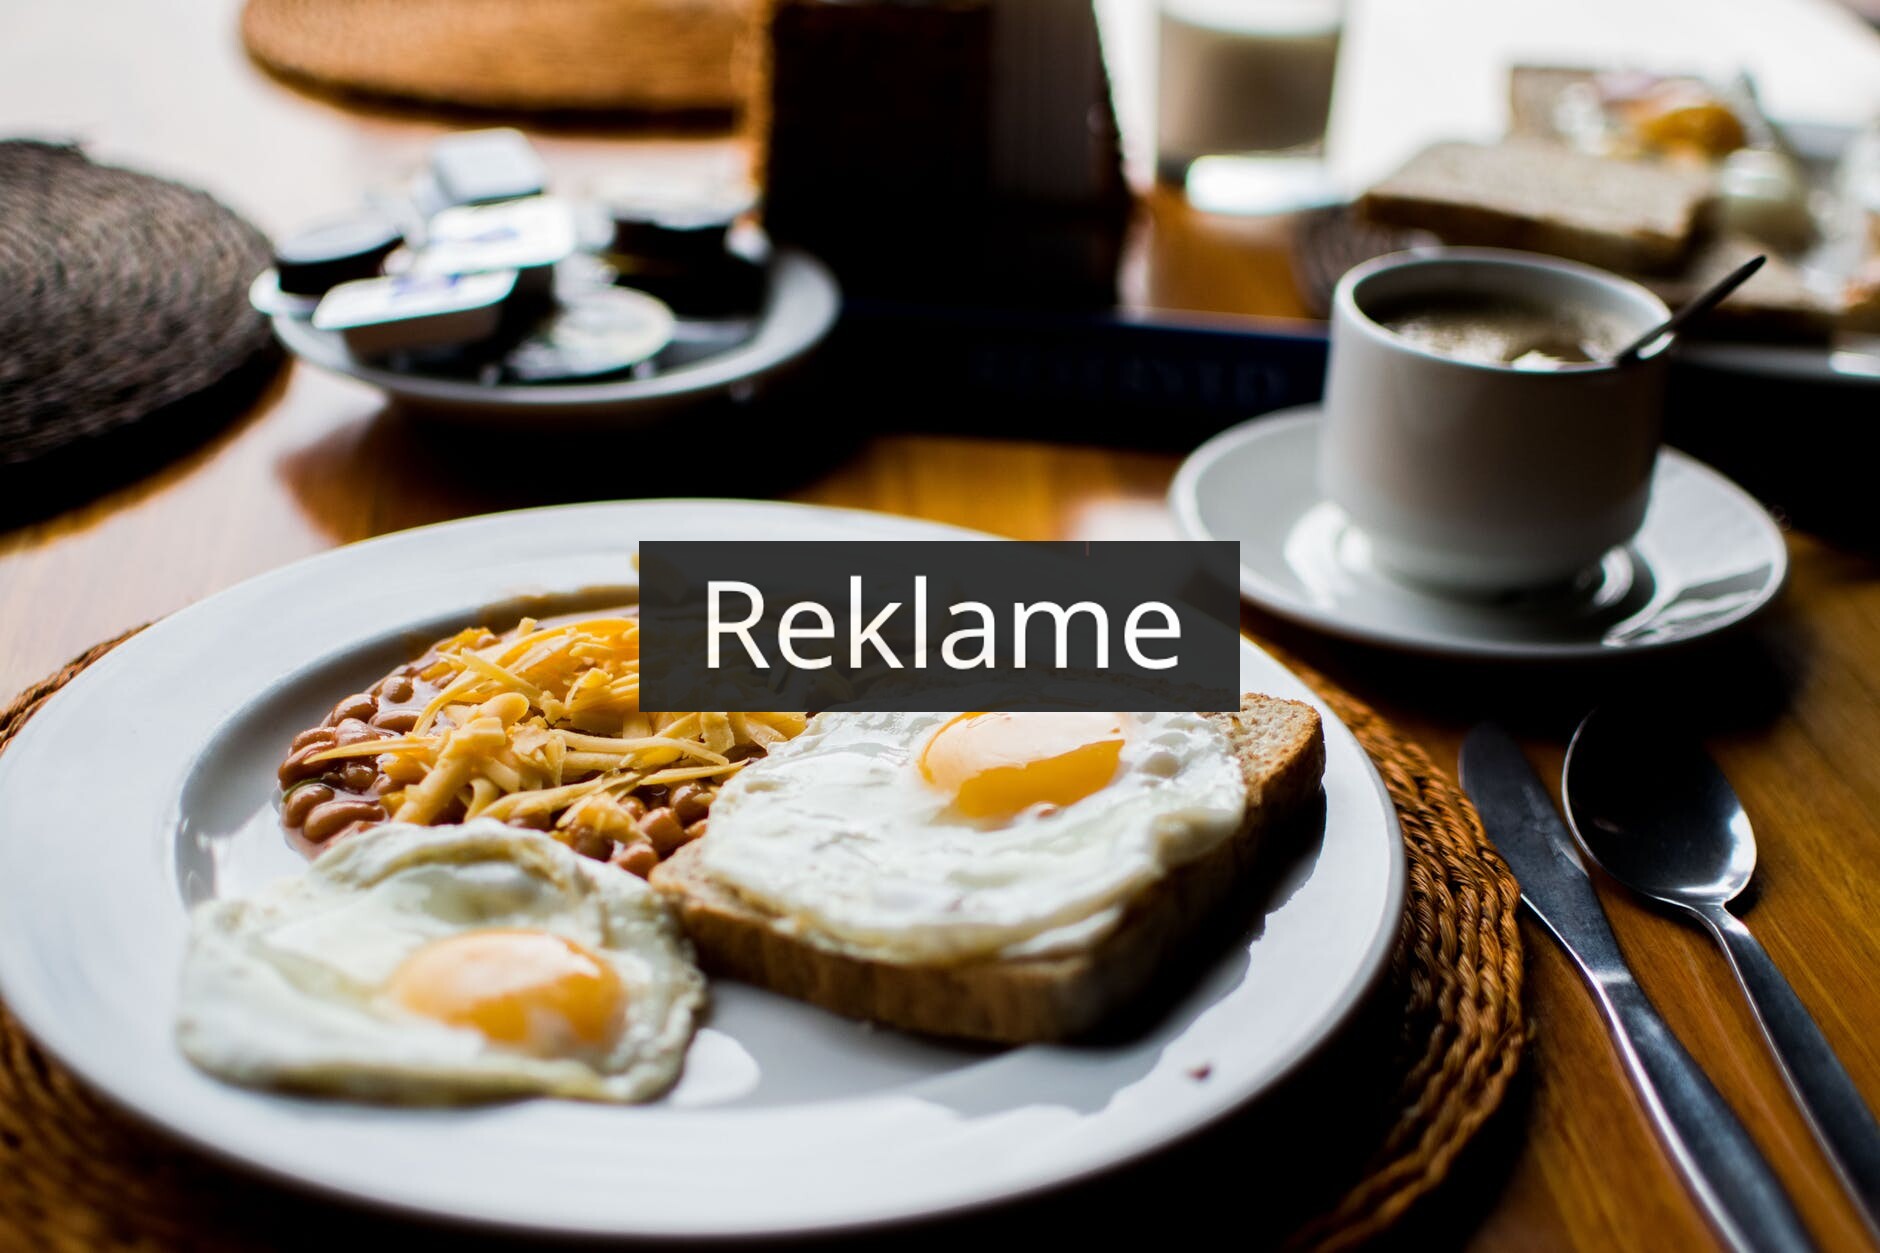 En lækker og nem morgenmad – hvad kan du gøre